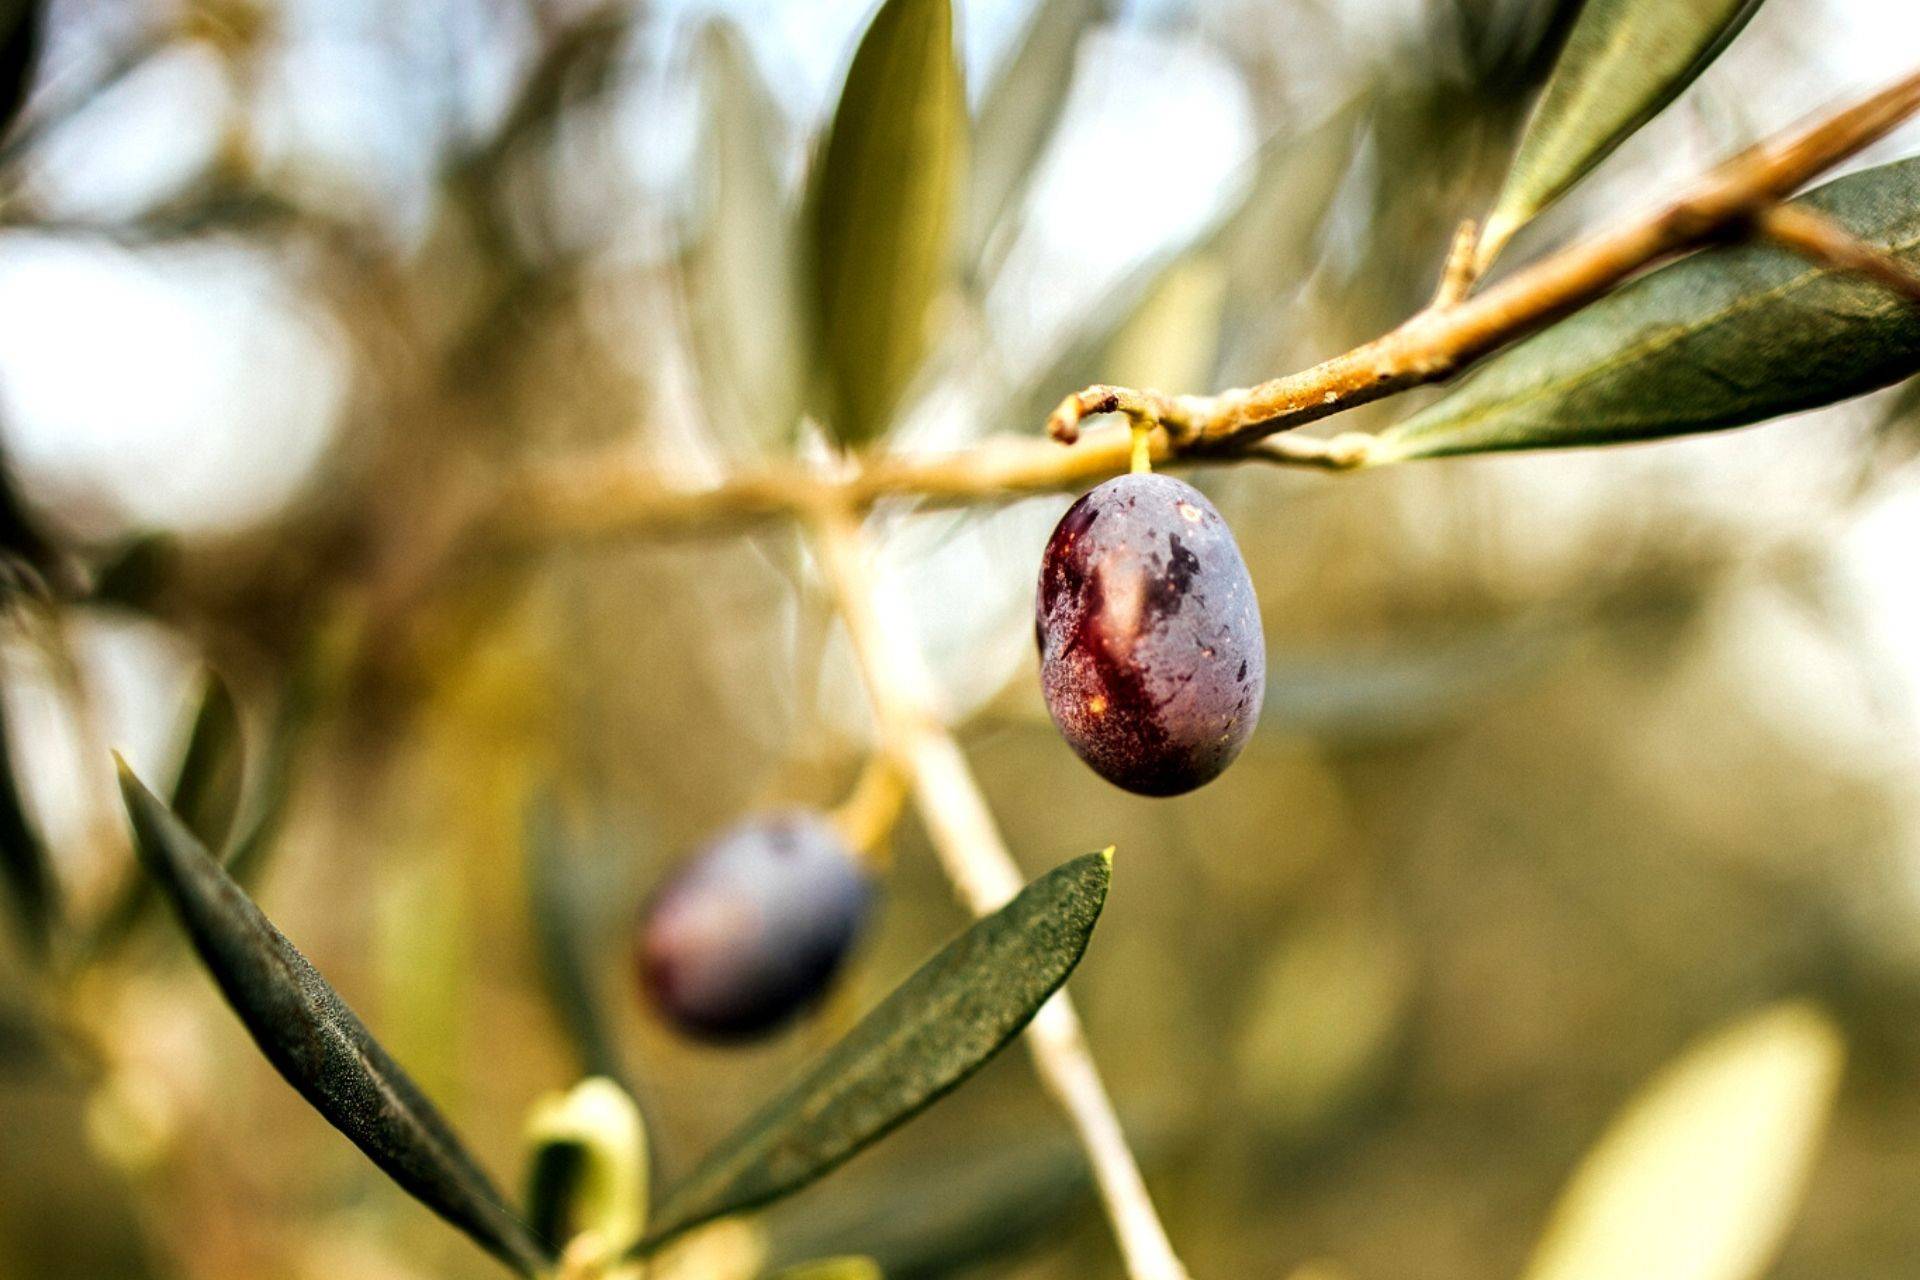 Les olives de la Valdichiana Aretina